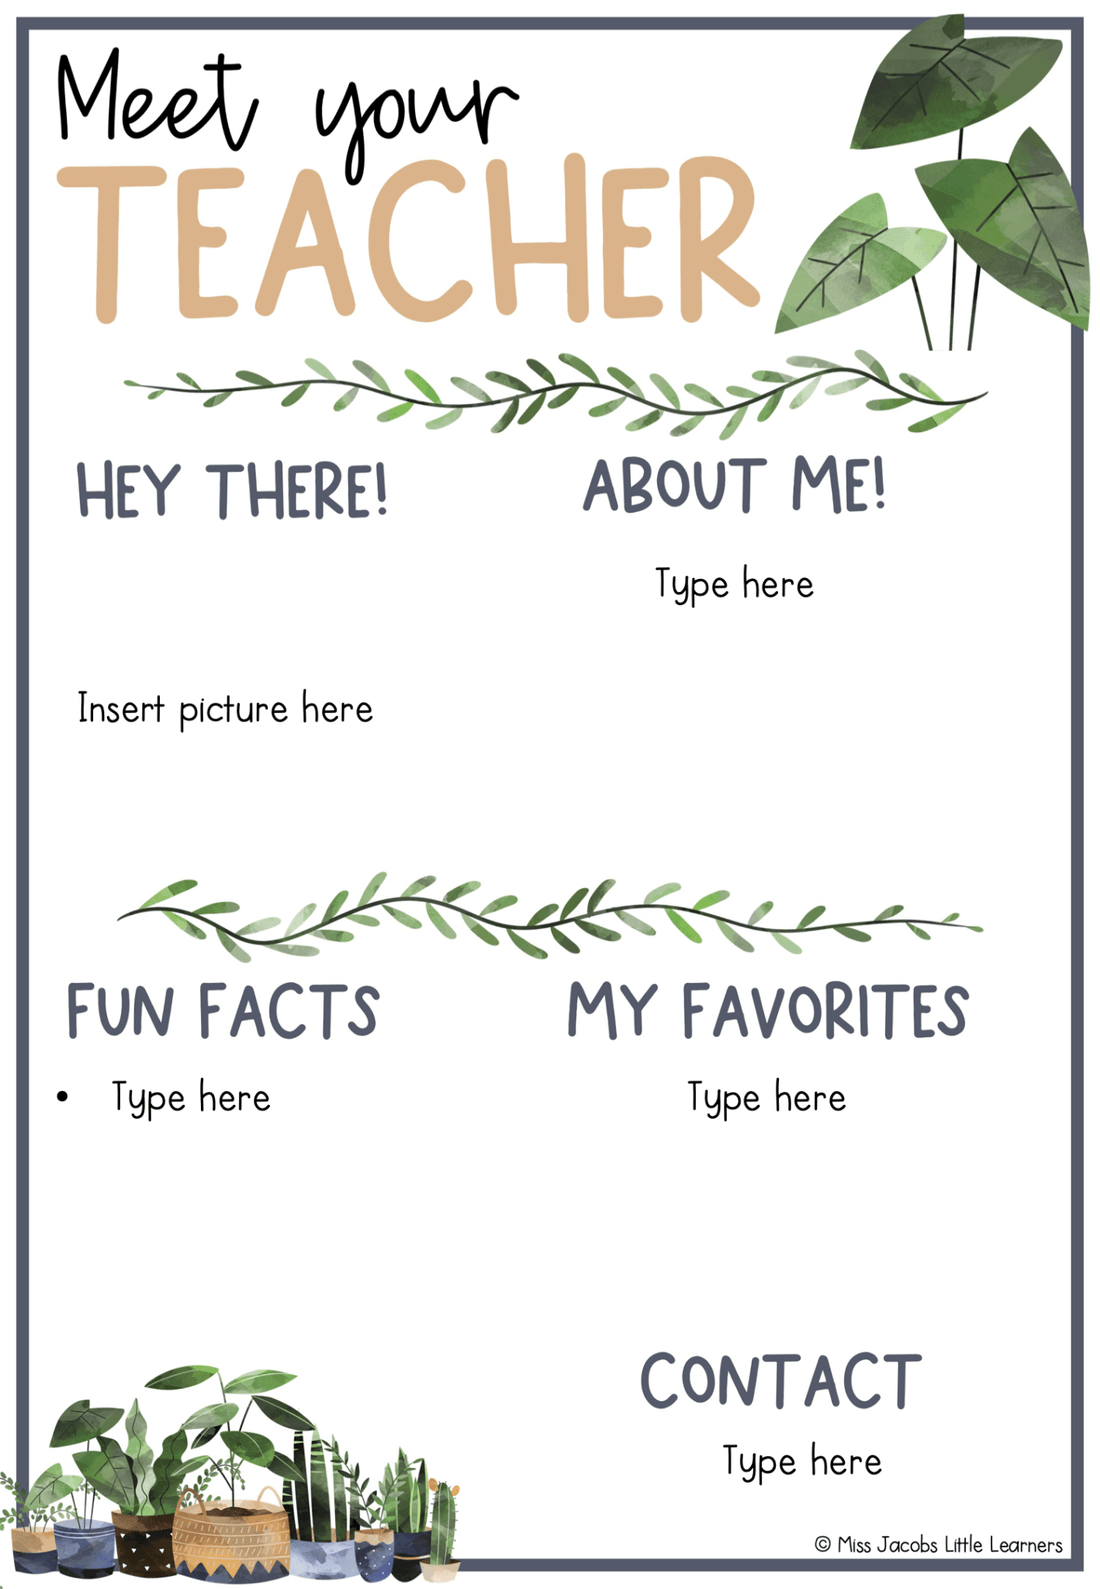  Meet the Teacher Template - Miss Jacobs Little Learners